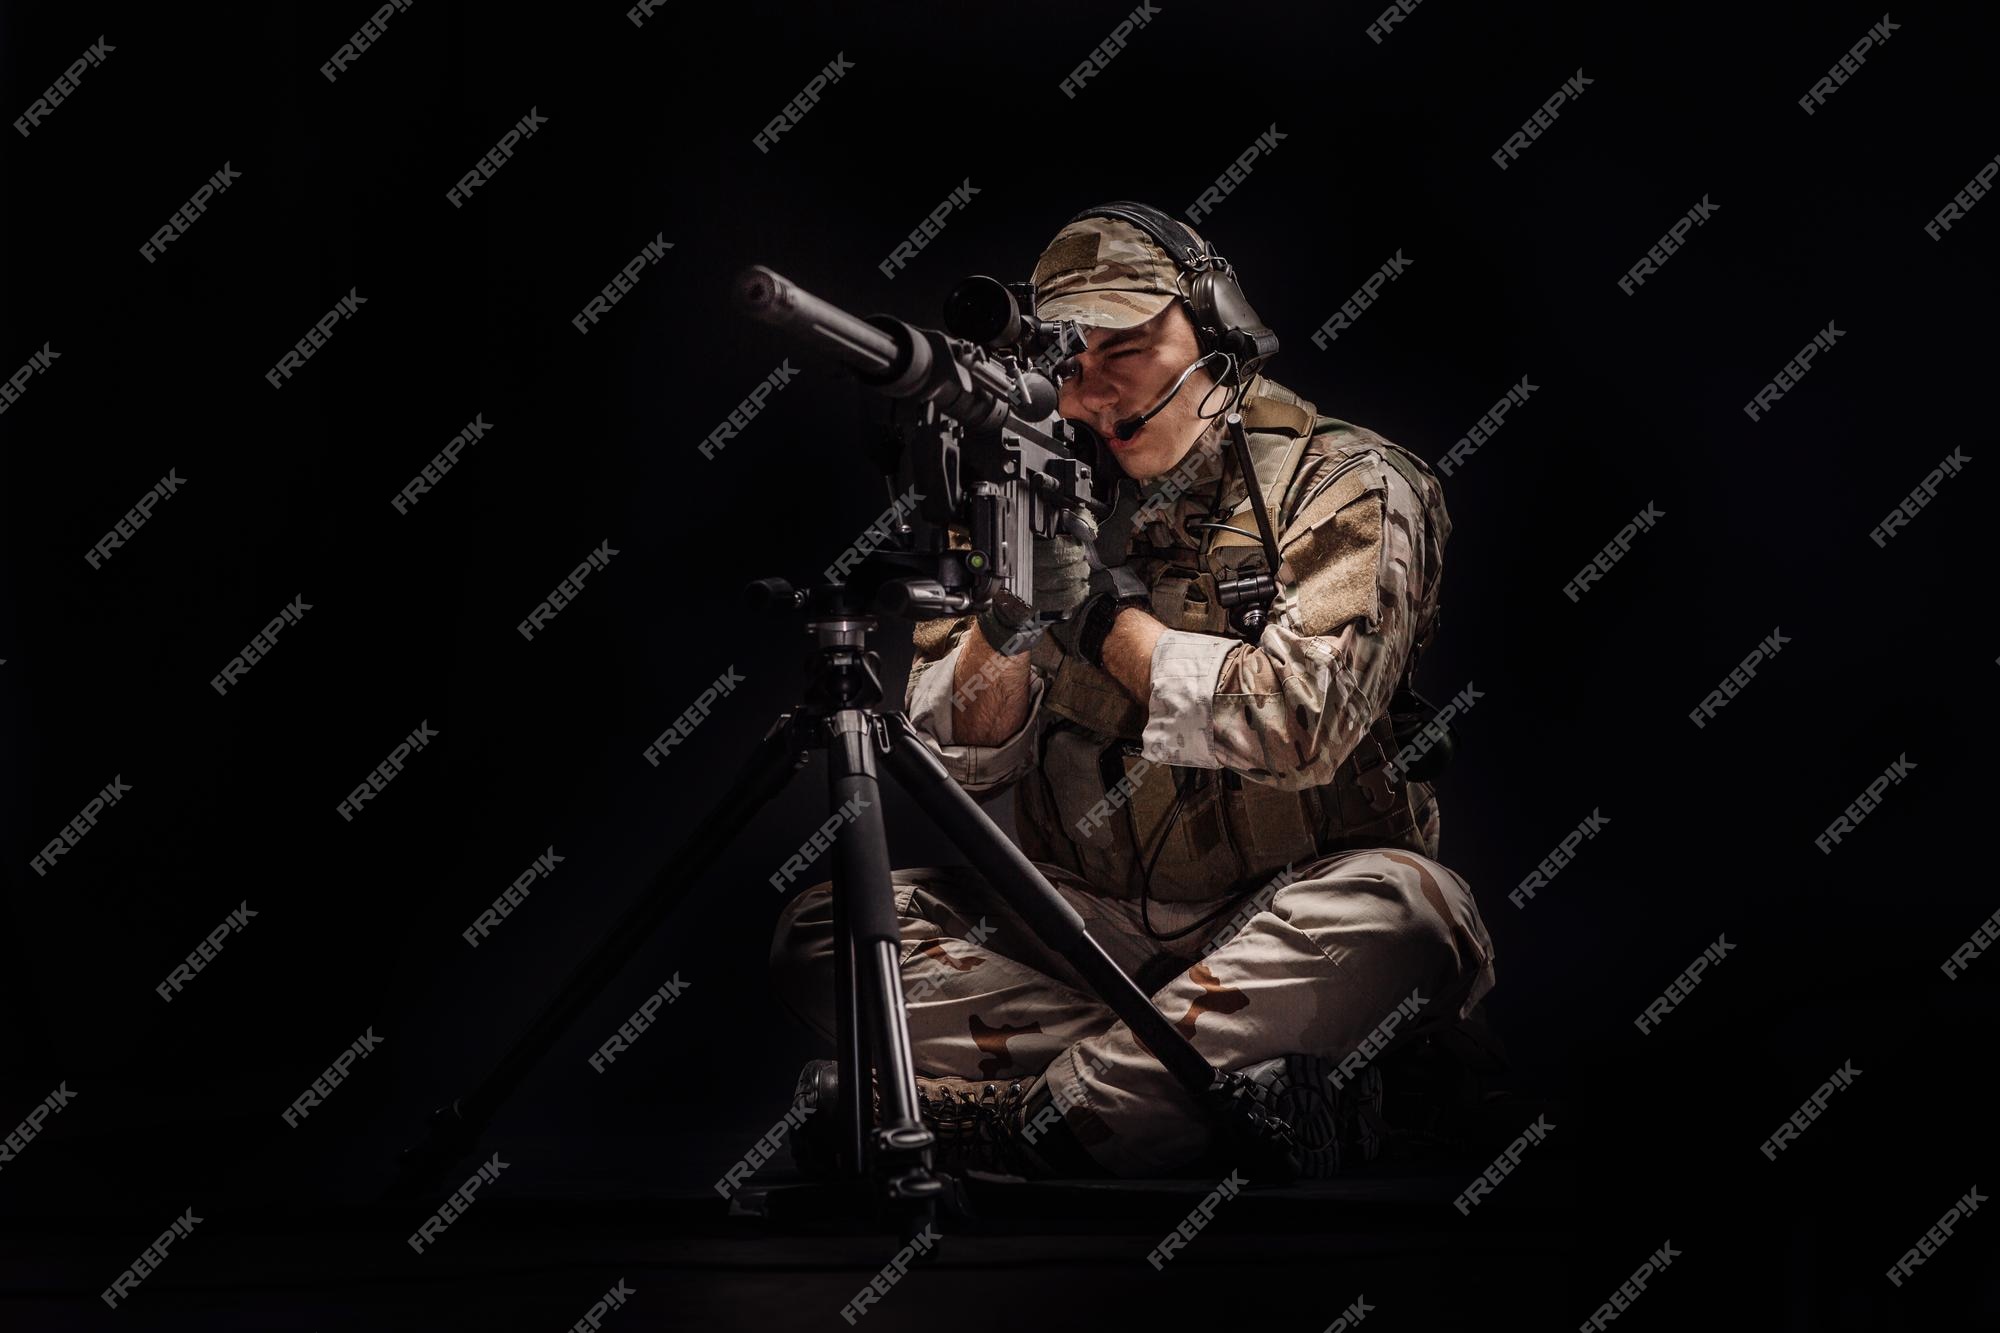 sniper concept art